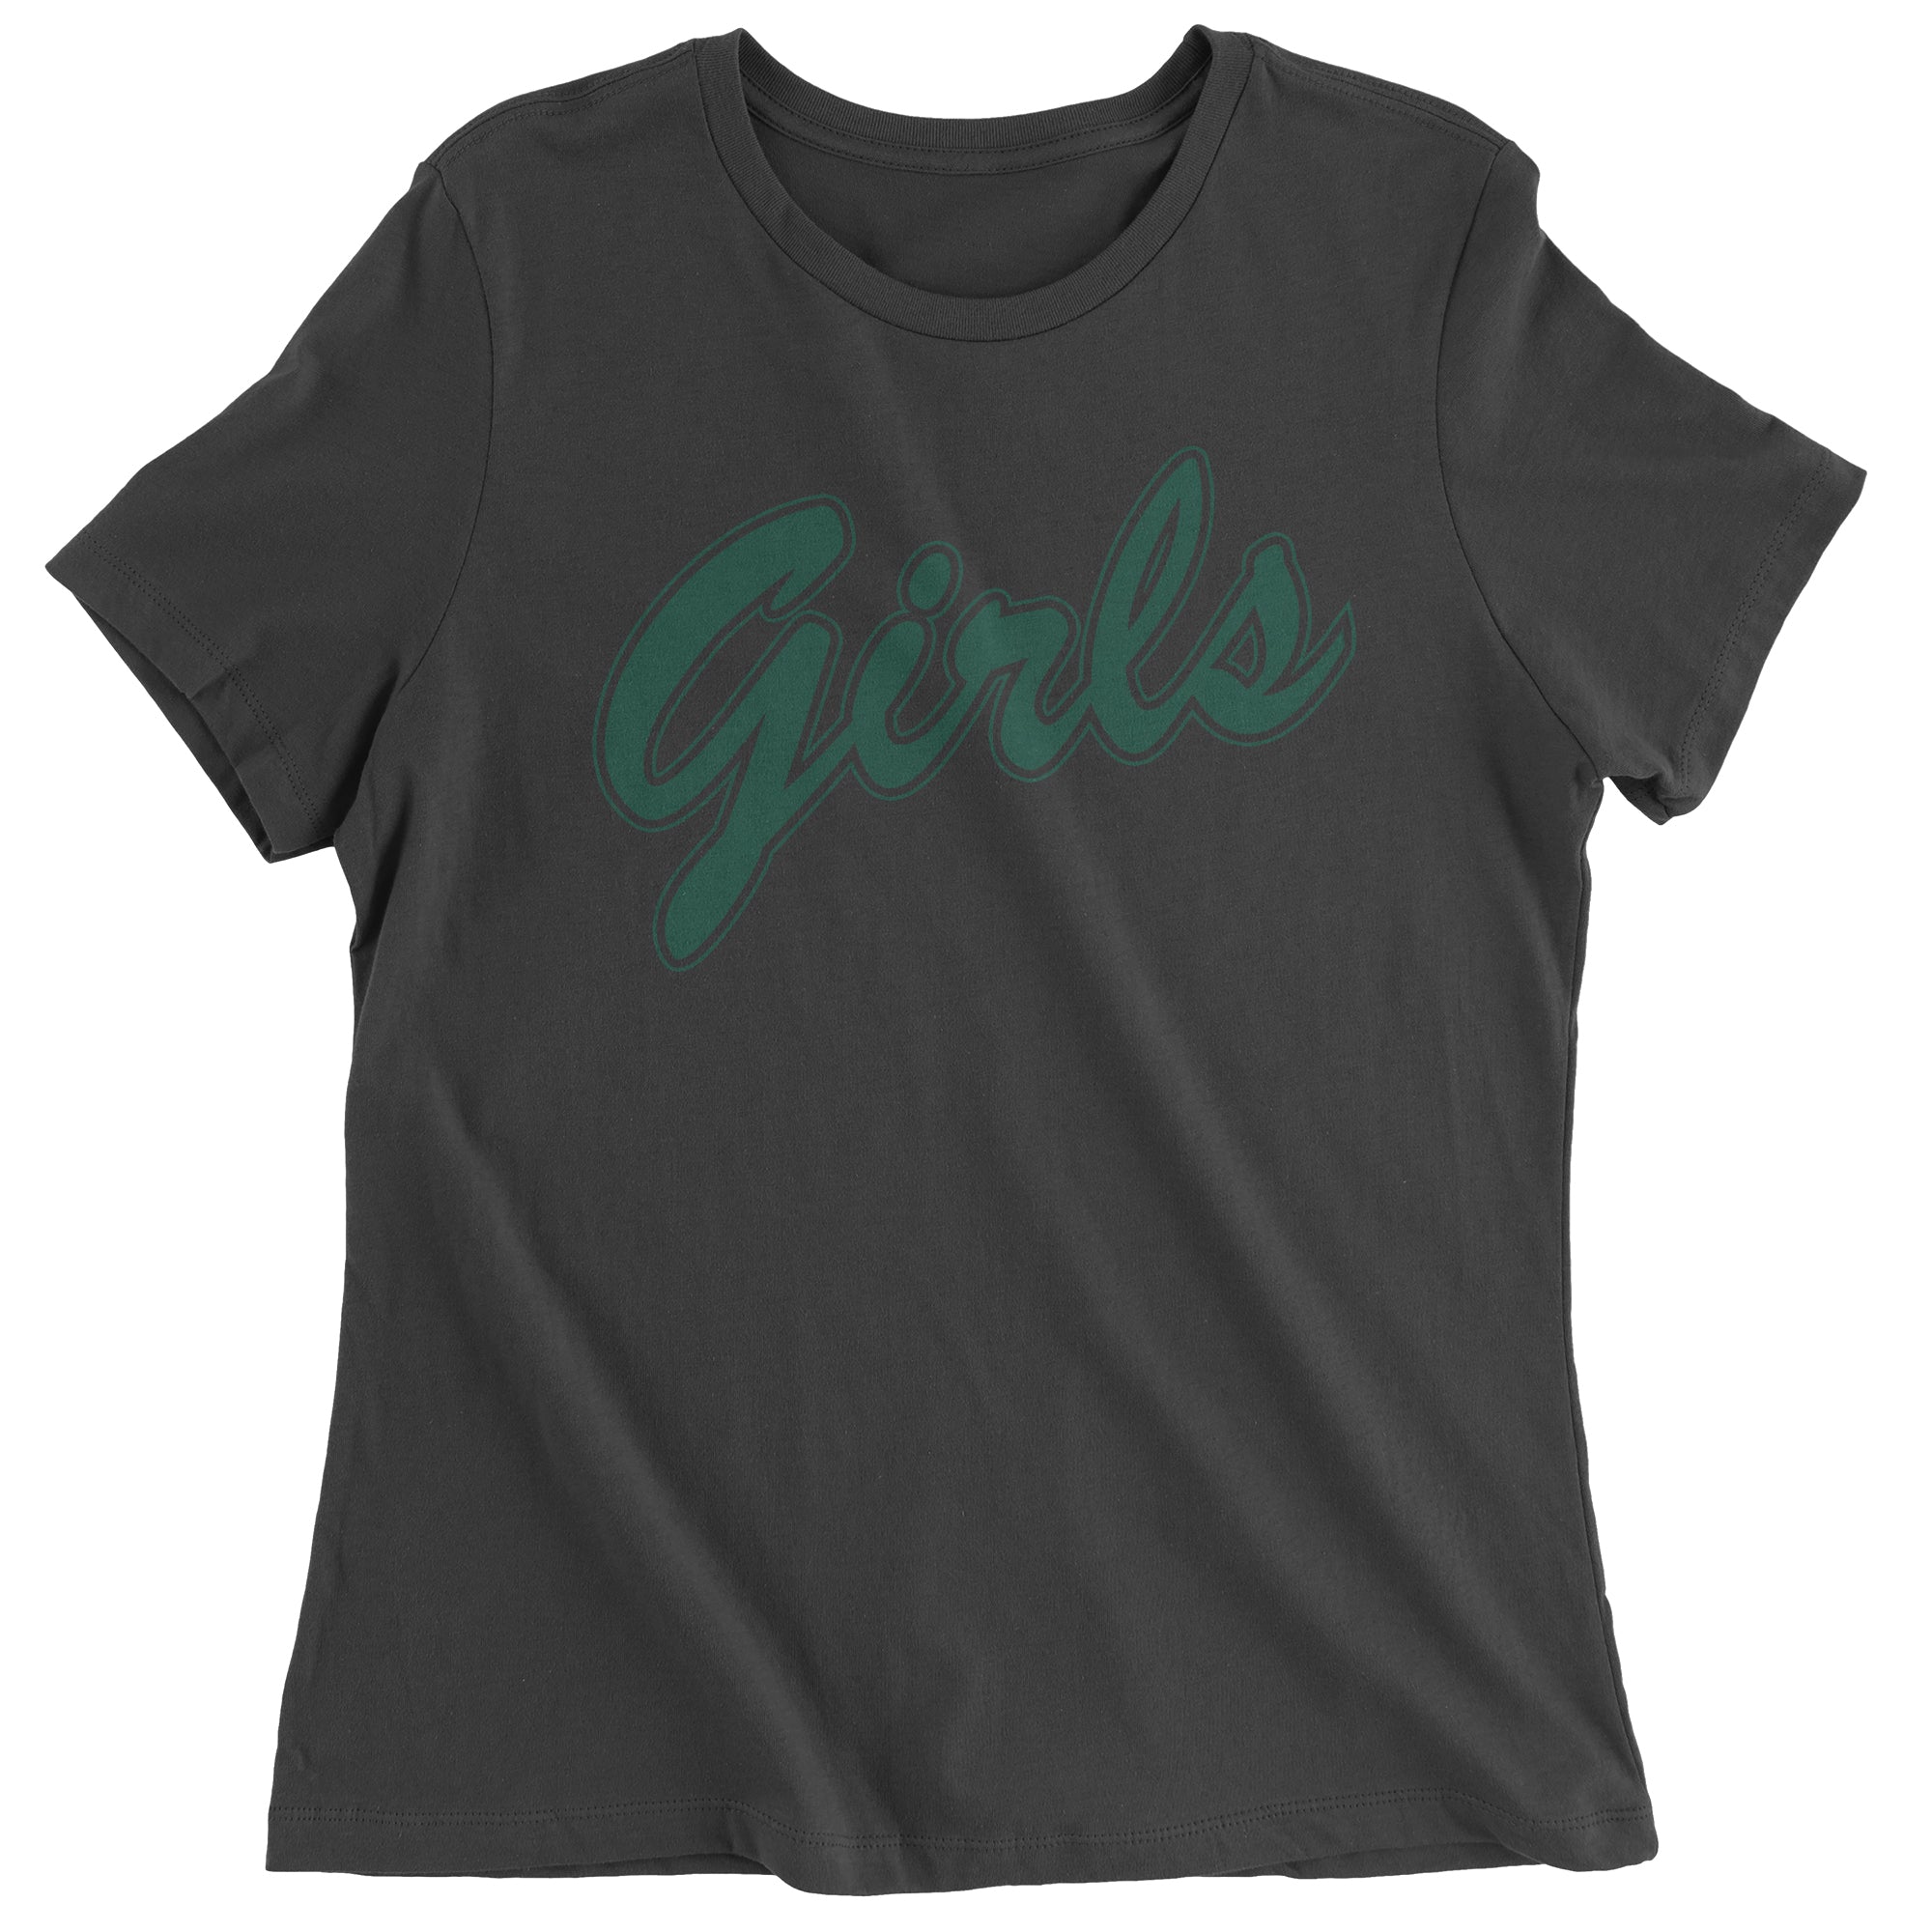 Girls Shirt From Friends (Green) Women's T-Shirt